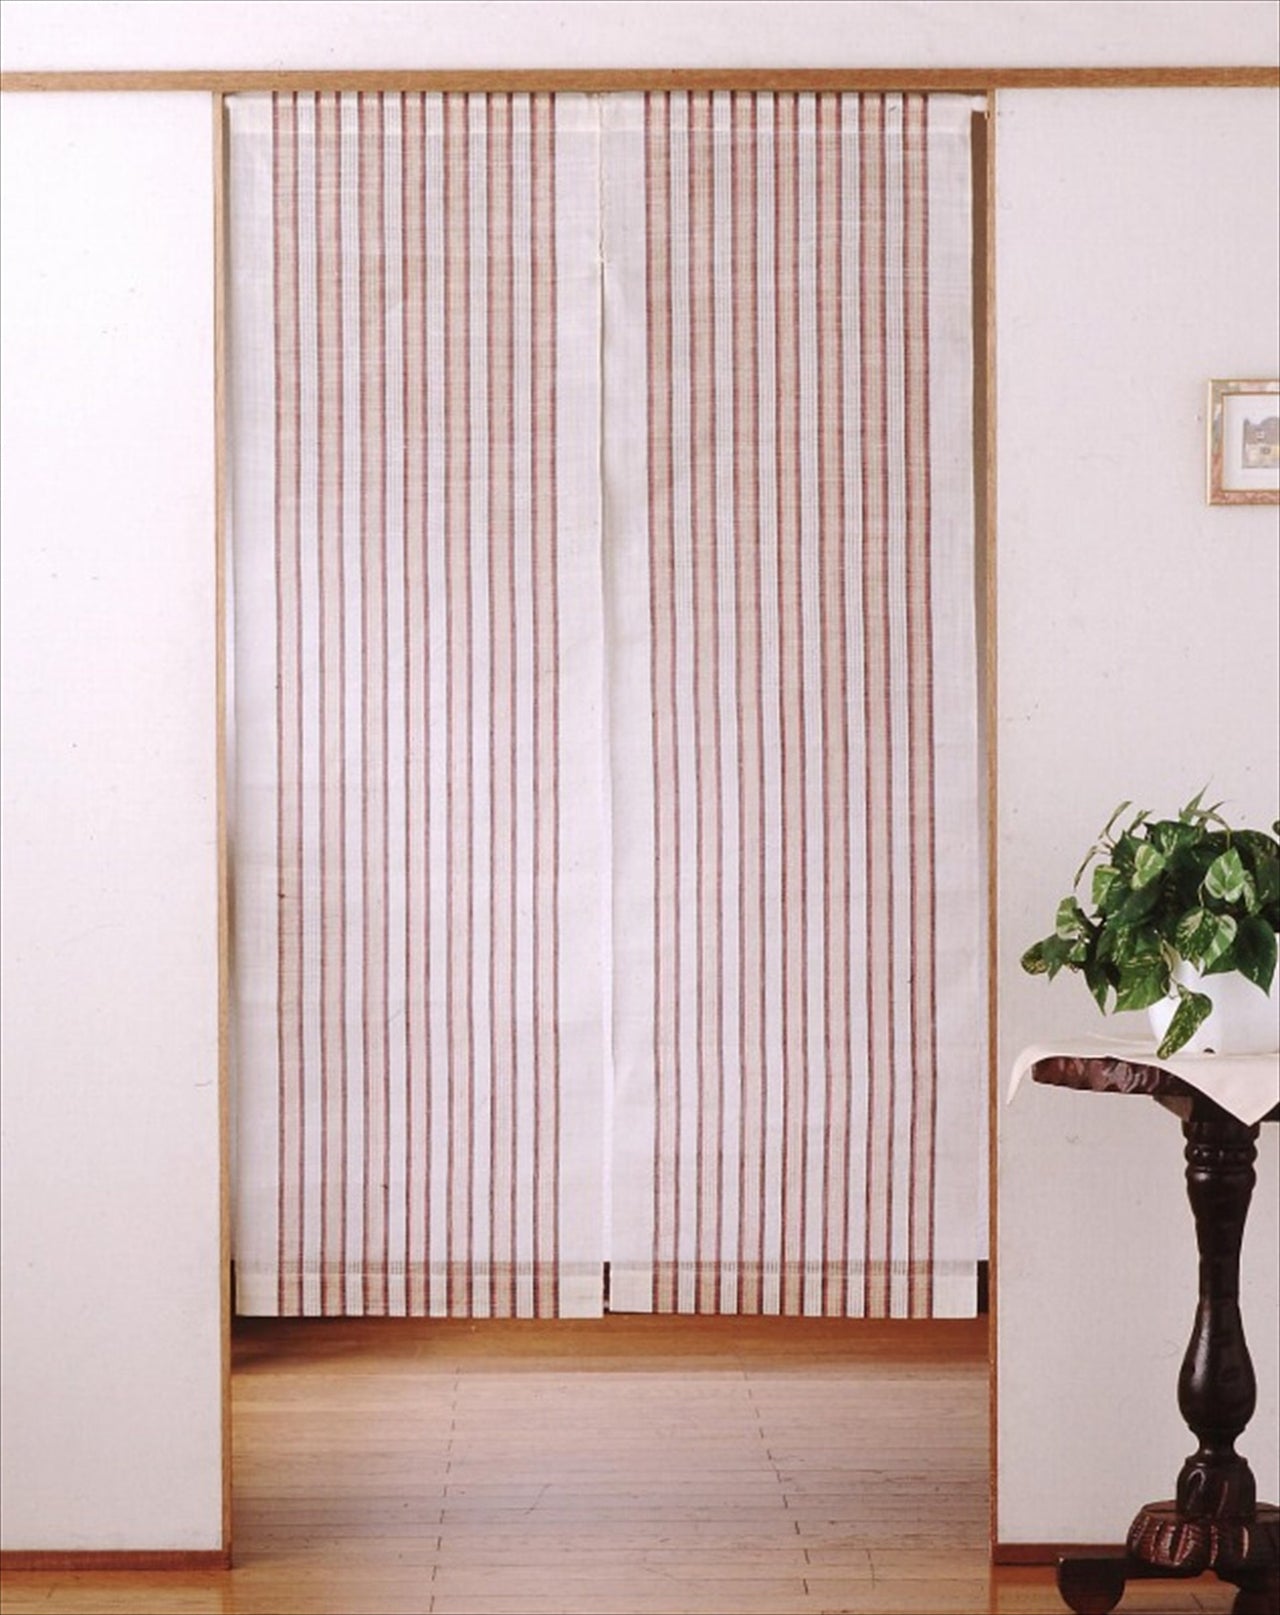 100％ Linen Japanese art Modern tapestry 90×150cm Noren door curtain Wall hanging